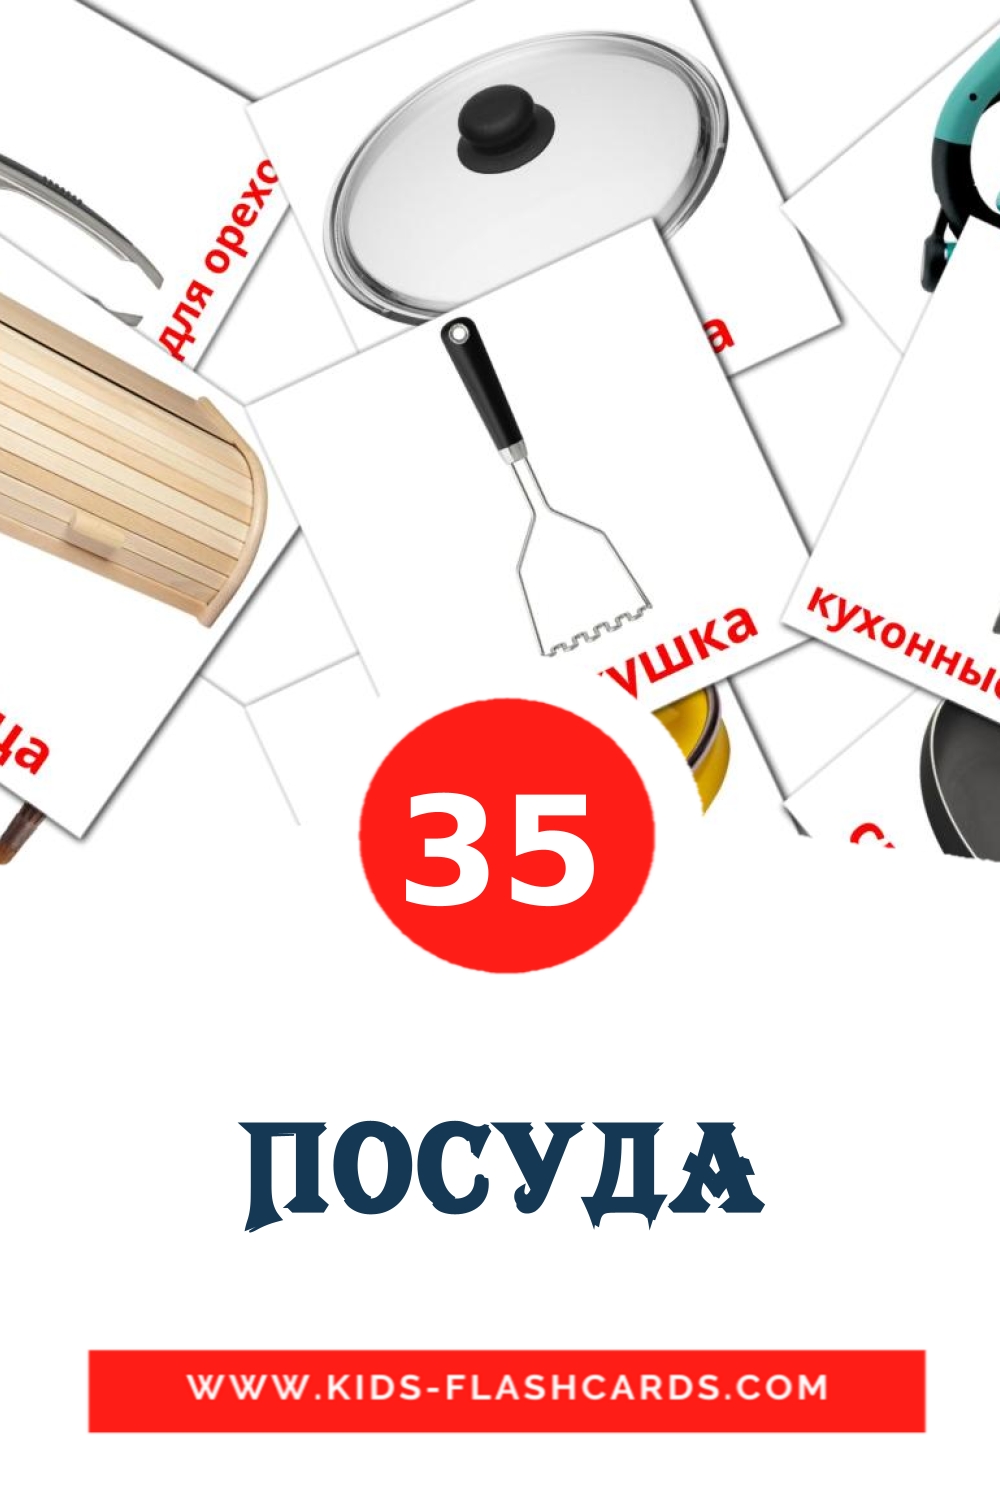 Посуда на русском для Детского Сада (35 карточек)